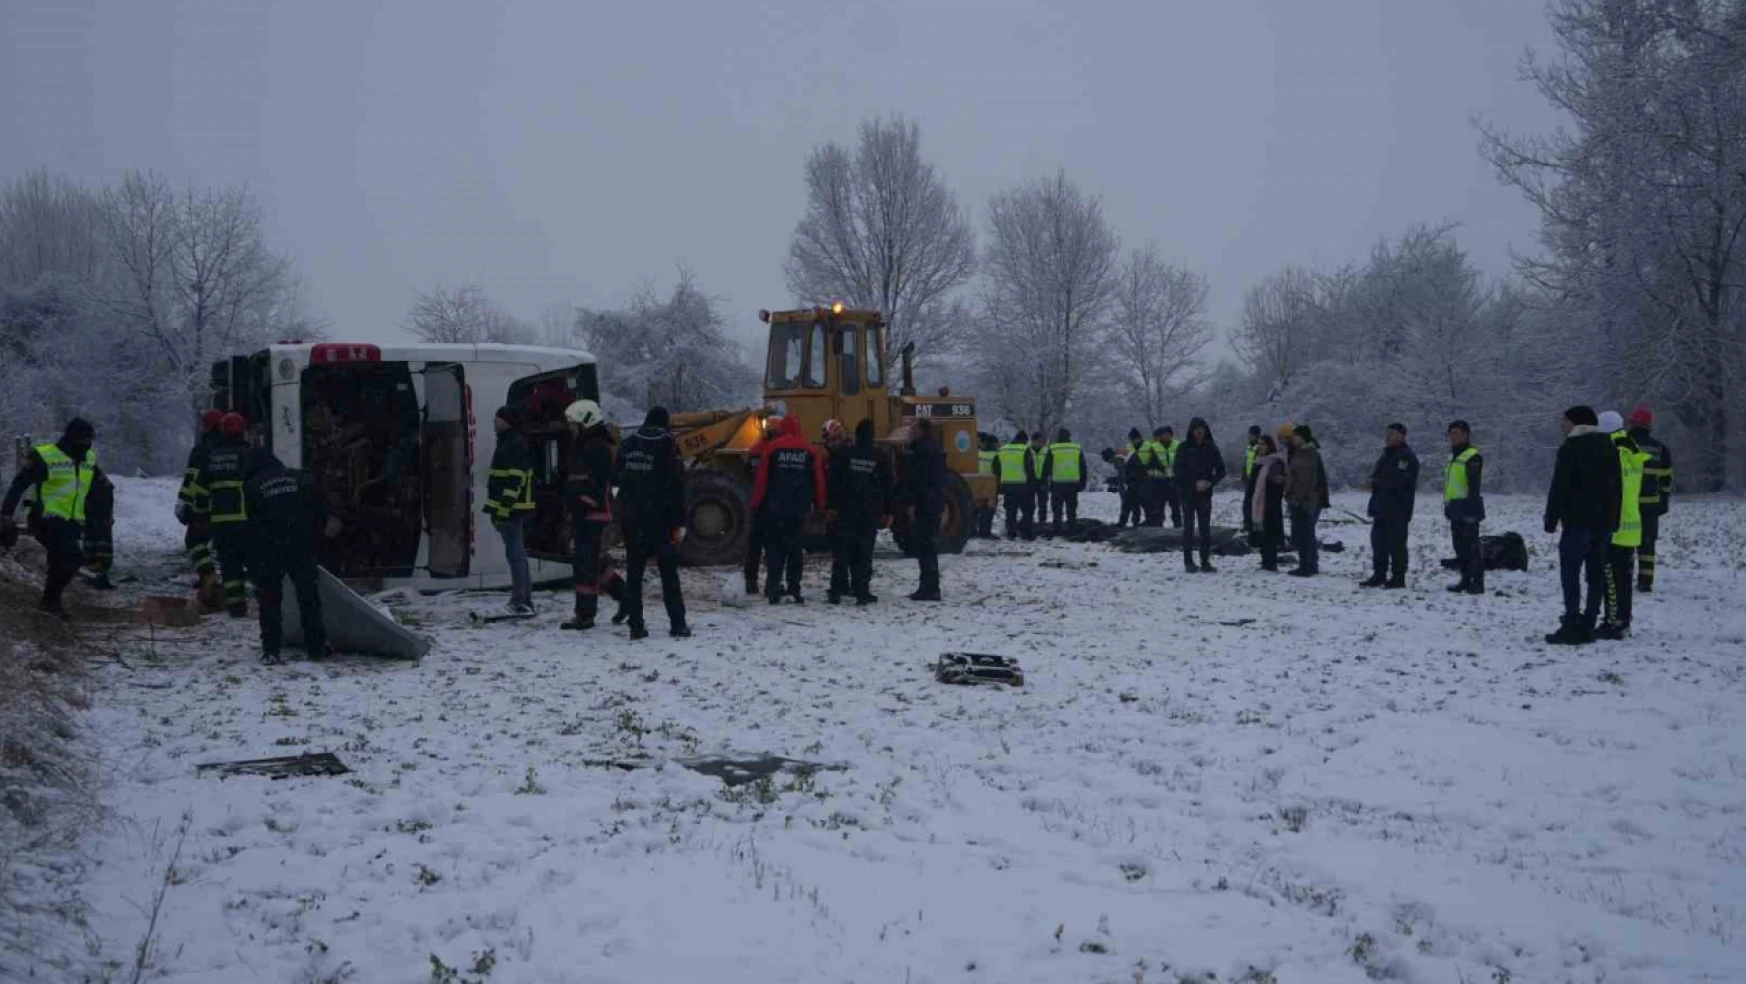 Kastamonu'da 6 kişinin öldüğü otobüs kazasında 27 kişi taburcu edildi